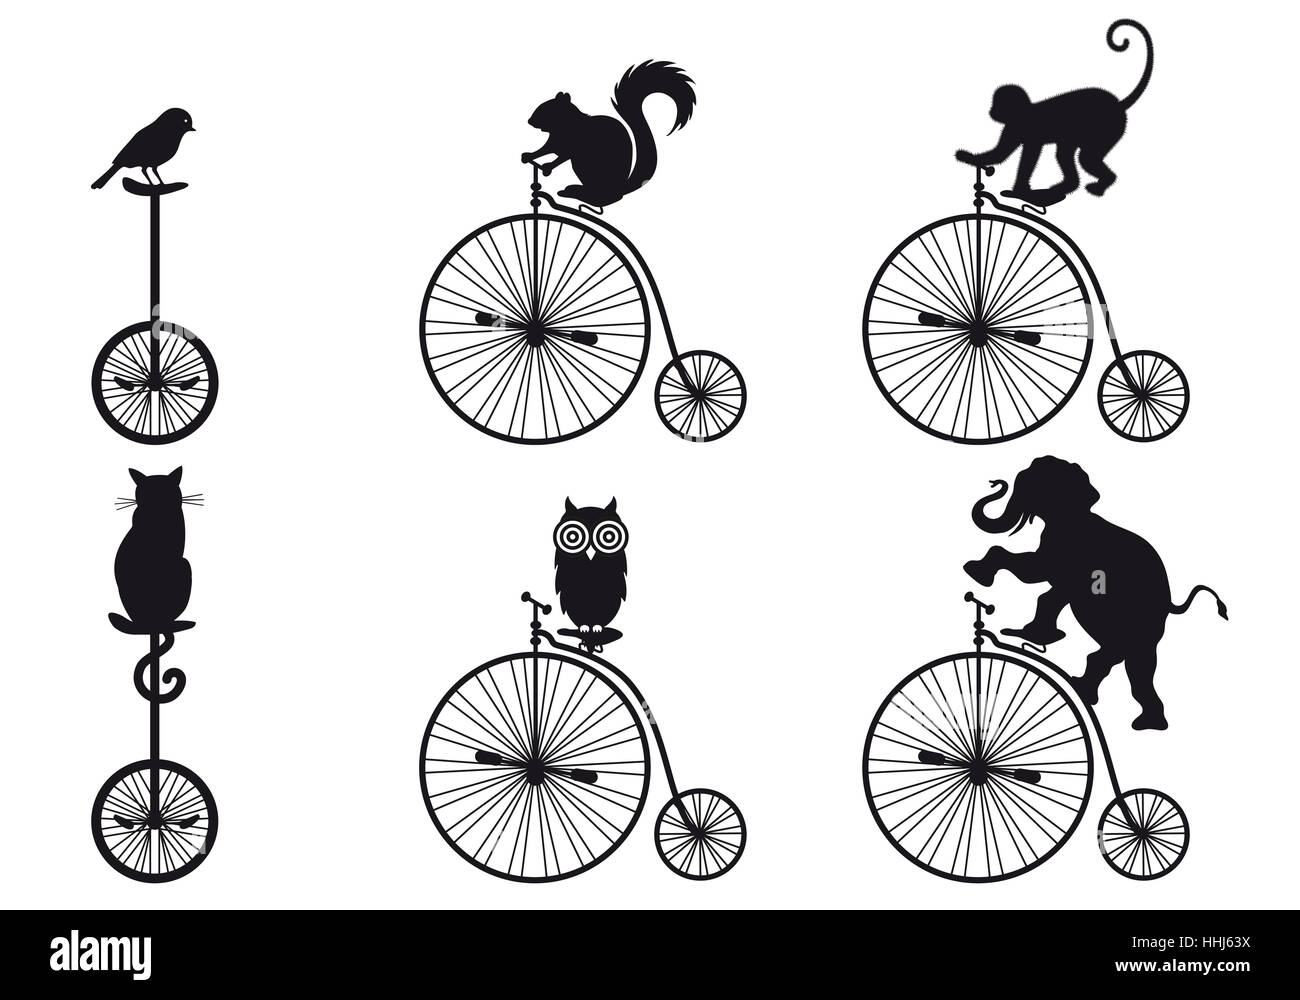 Animali, uccelli, elefante, scimmia, OWL, bike, noleggio, ciclo, Pussycat, gatto, Foto Stock